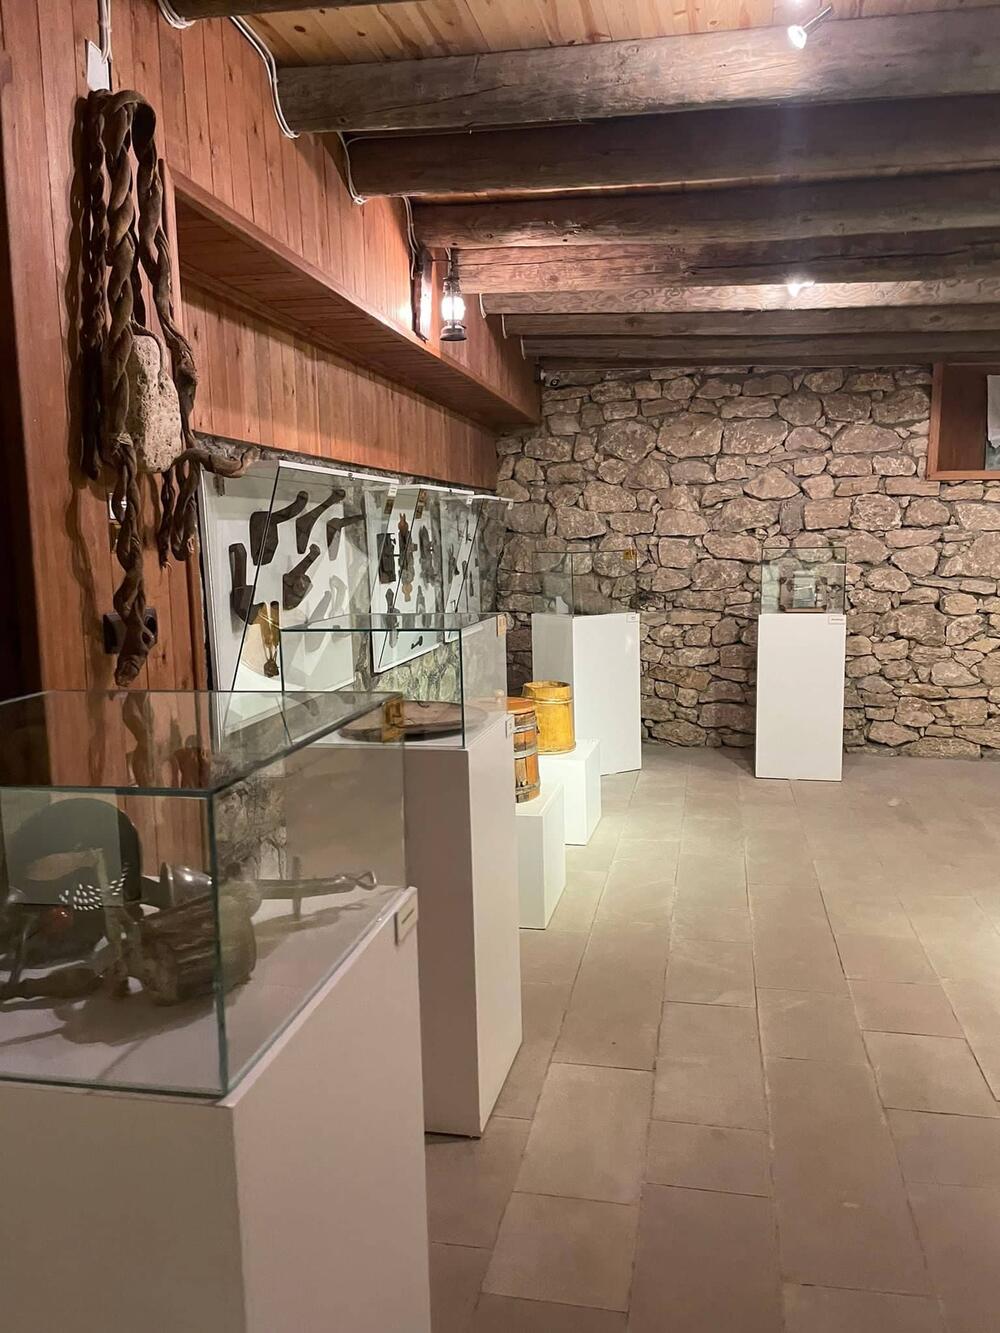 <p>Etnografski muzej Kenan Javuz u malom turskom gradu Bajburtu u crnomorskoj regiji pruža iskustvo putovanja kroz vrijeme dok oživljava prošlost, čuva tradiciju i prenosi je dalje, a posjetiocima nudi noćenje u muzeju, jedinstven gastronomski užitak, bogatu kolekciju muzejskih eksponata u okviru više različitih postavki i niz kulturno-umjetničkih programa</p>